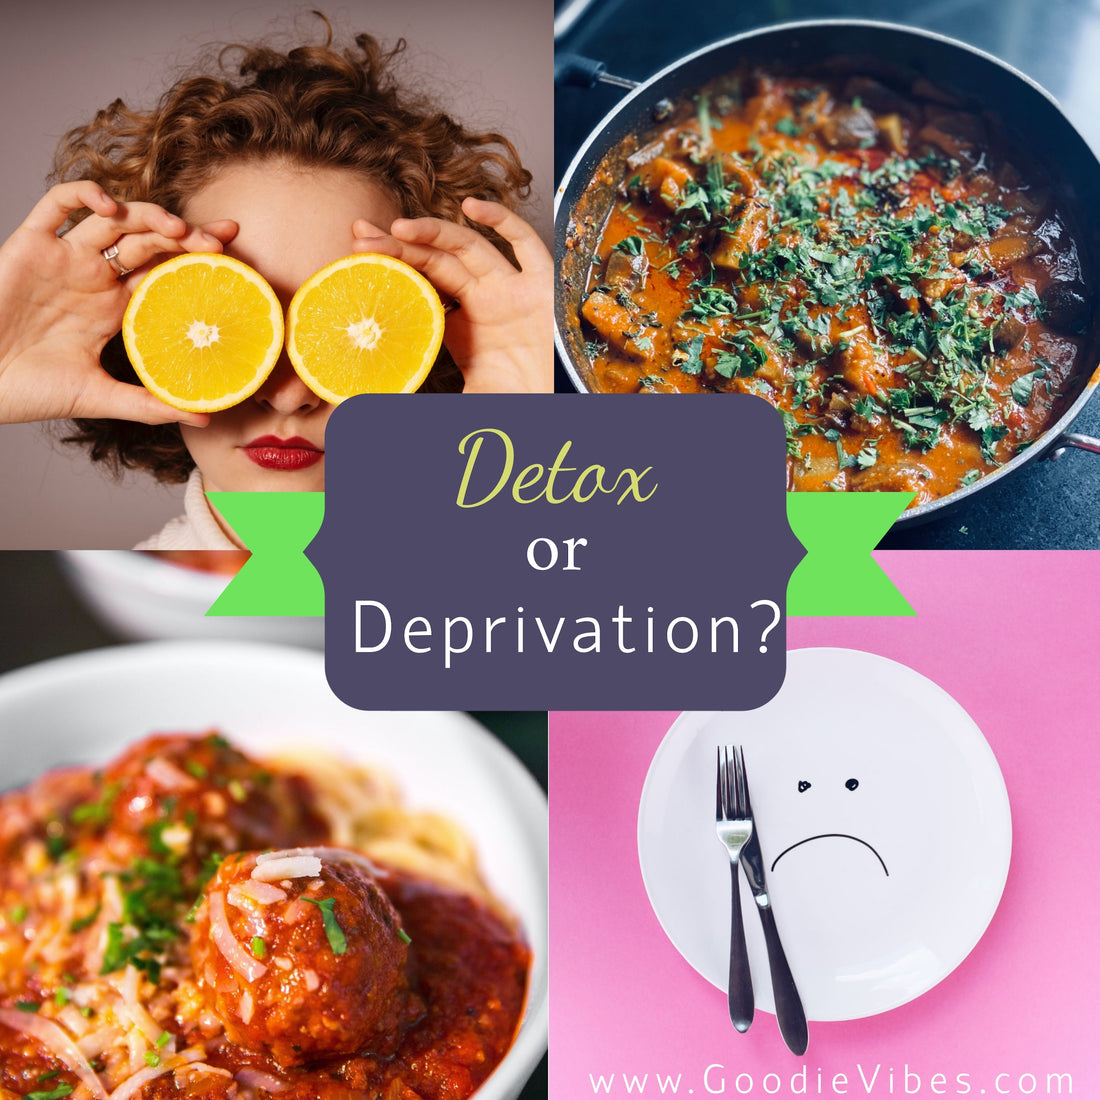 Detox or Deprivation?